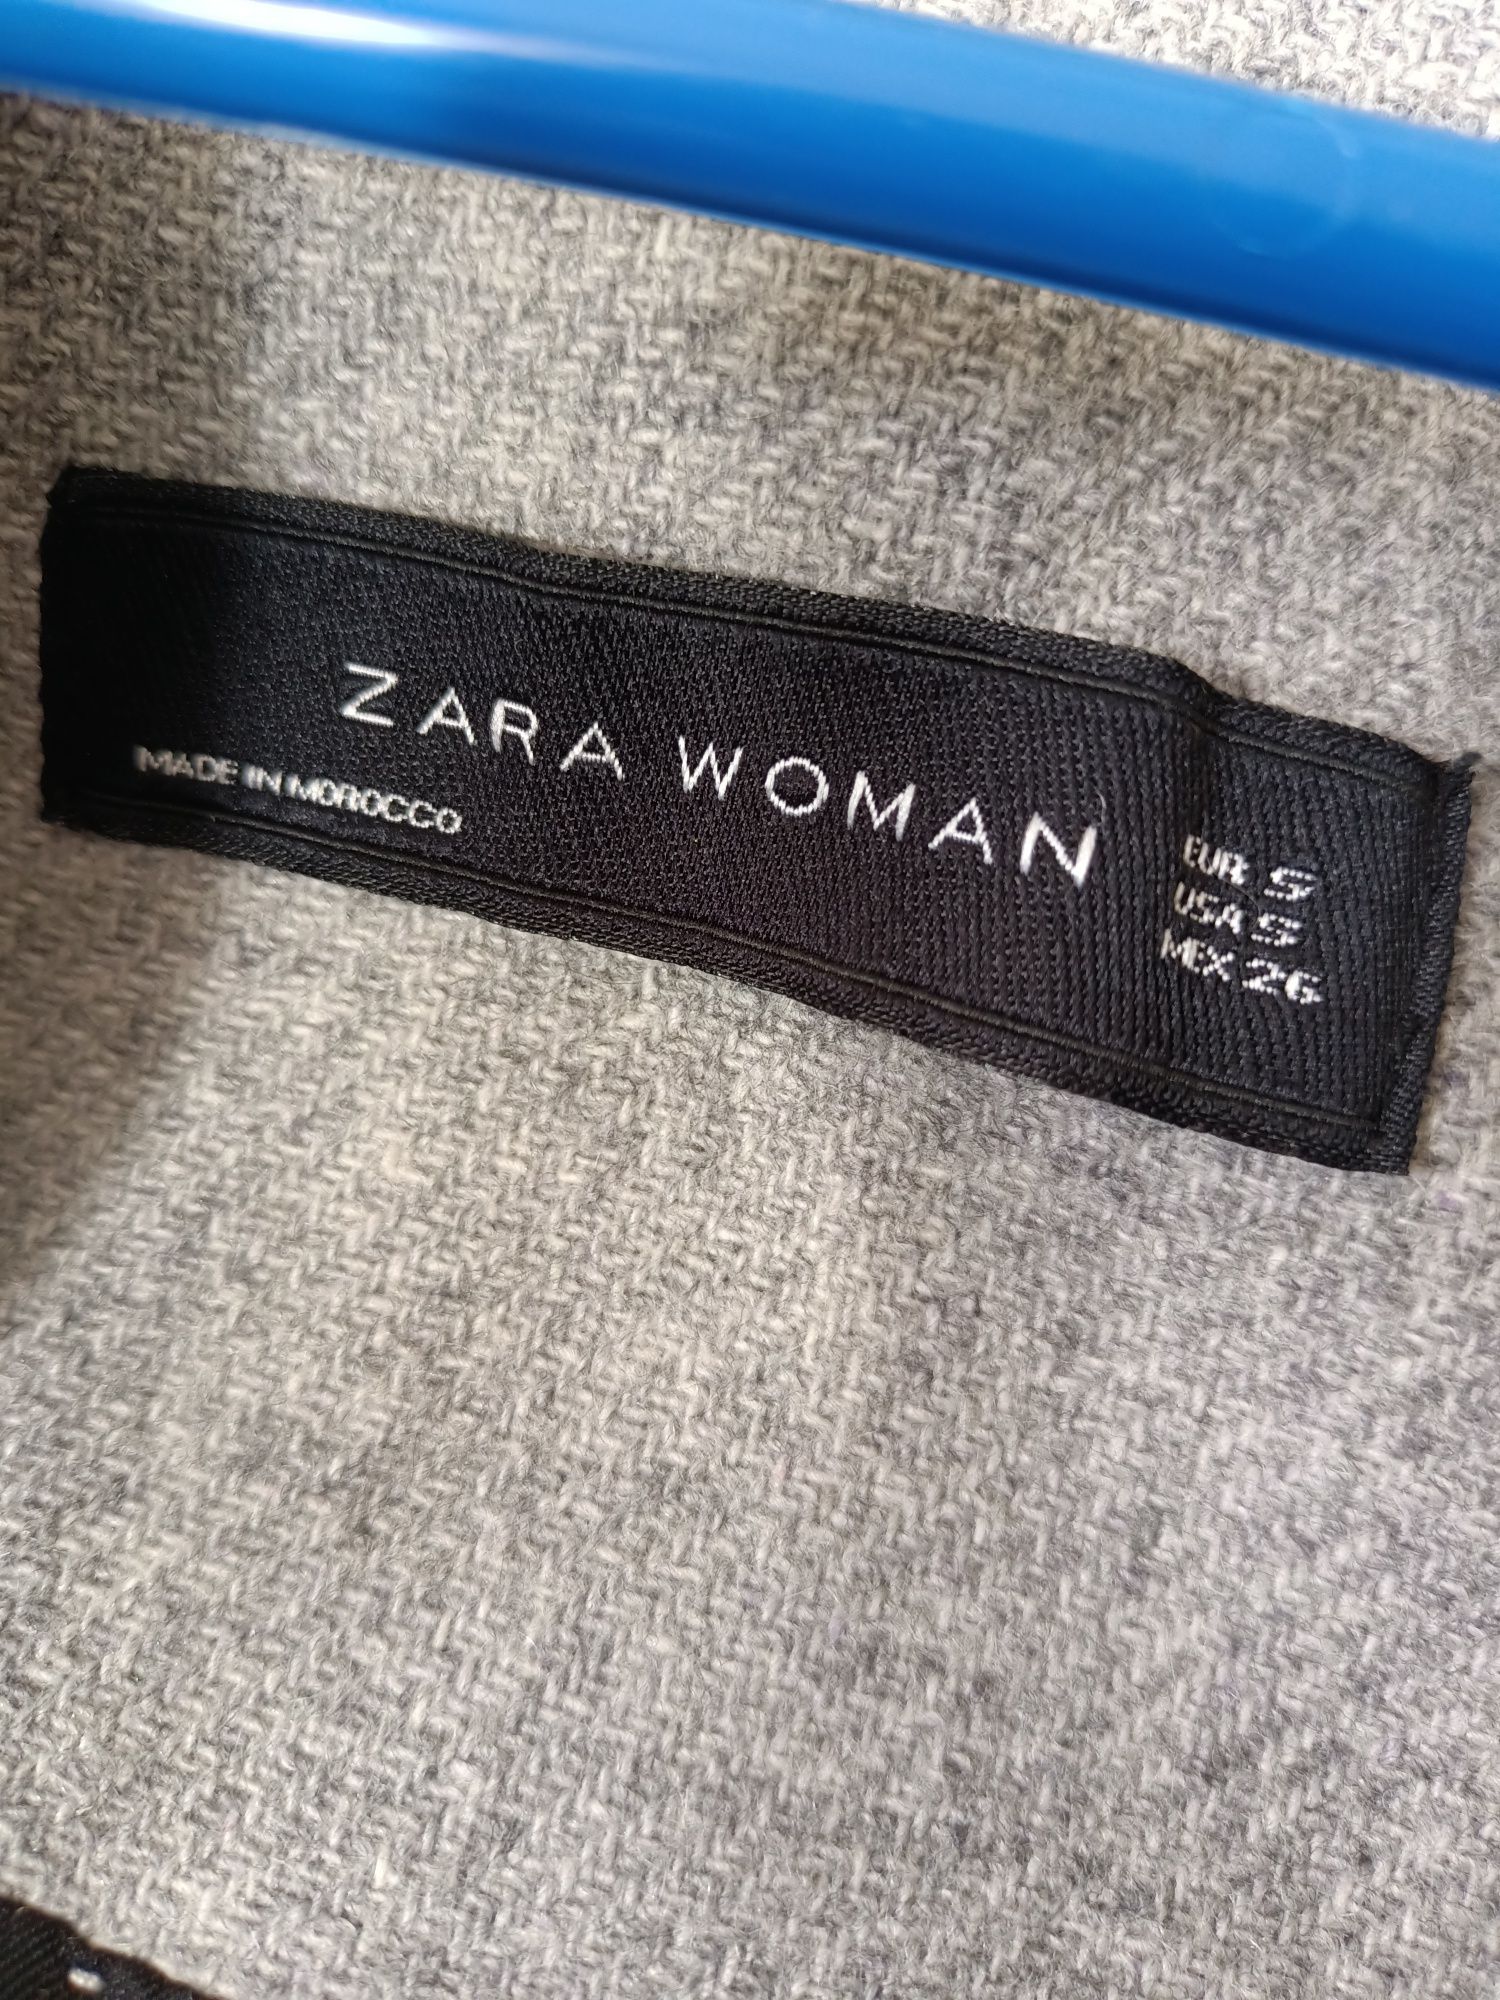 Продам пальто Zara